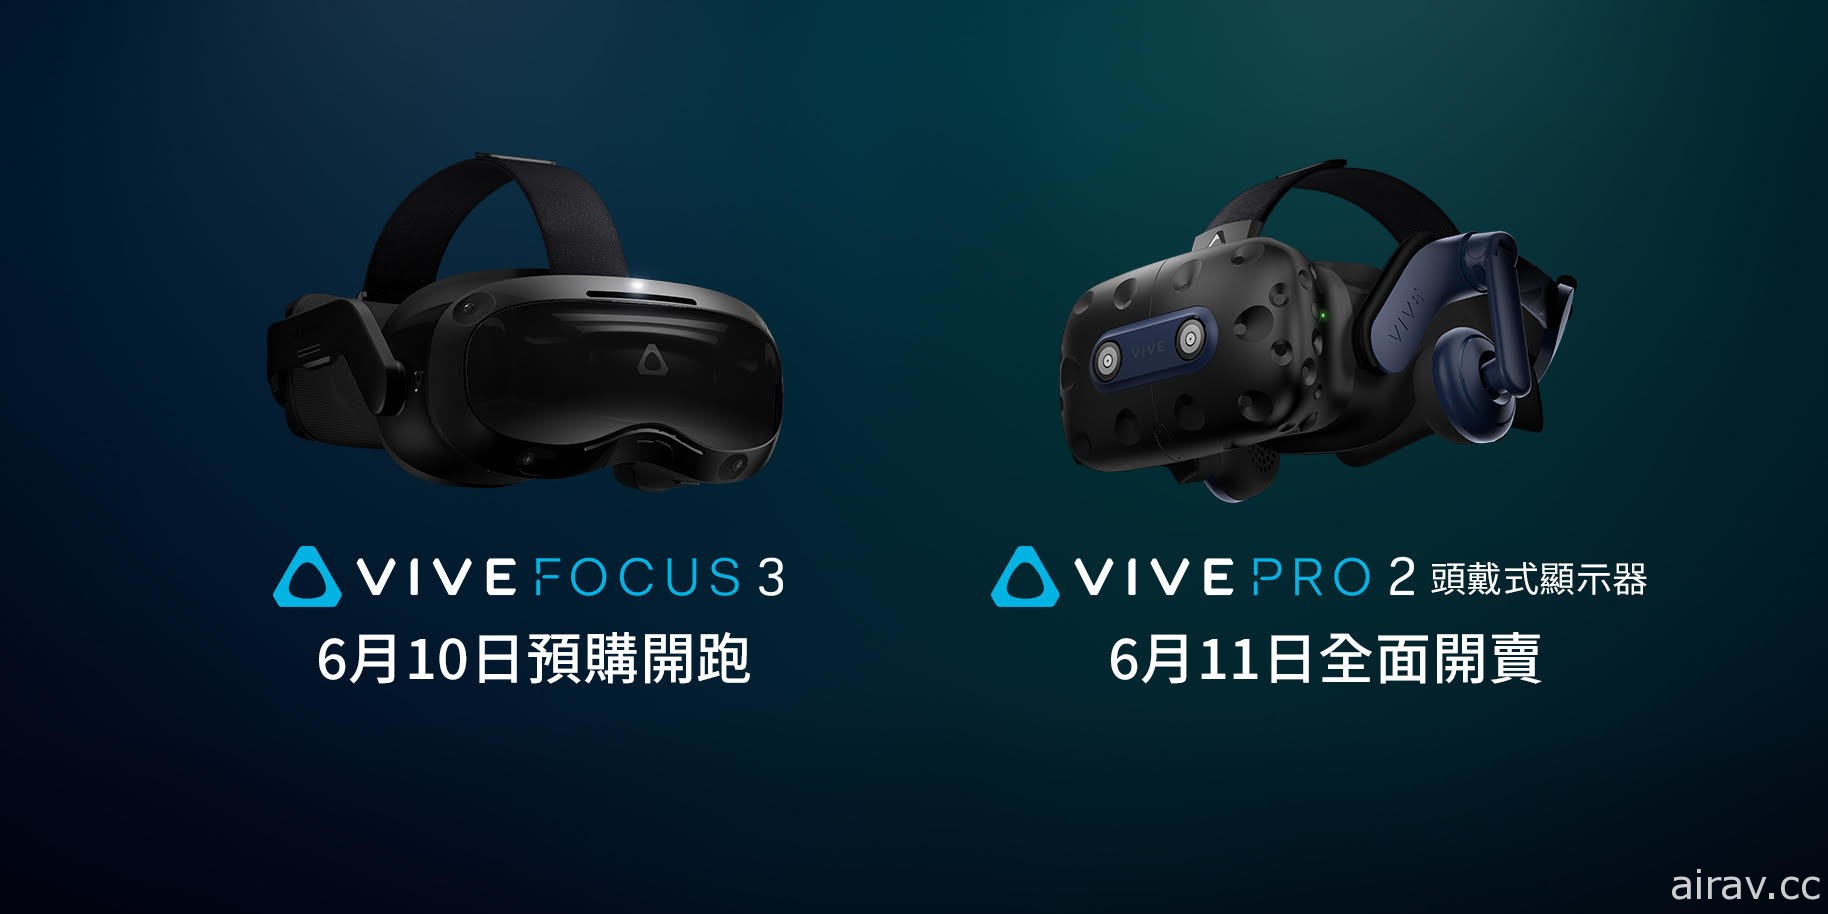 新一代旗艦級 VR 裝置「VIVE Pro 2」11 日開賣 一體機「VIVE Focus 3」稍晚推出